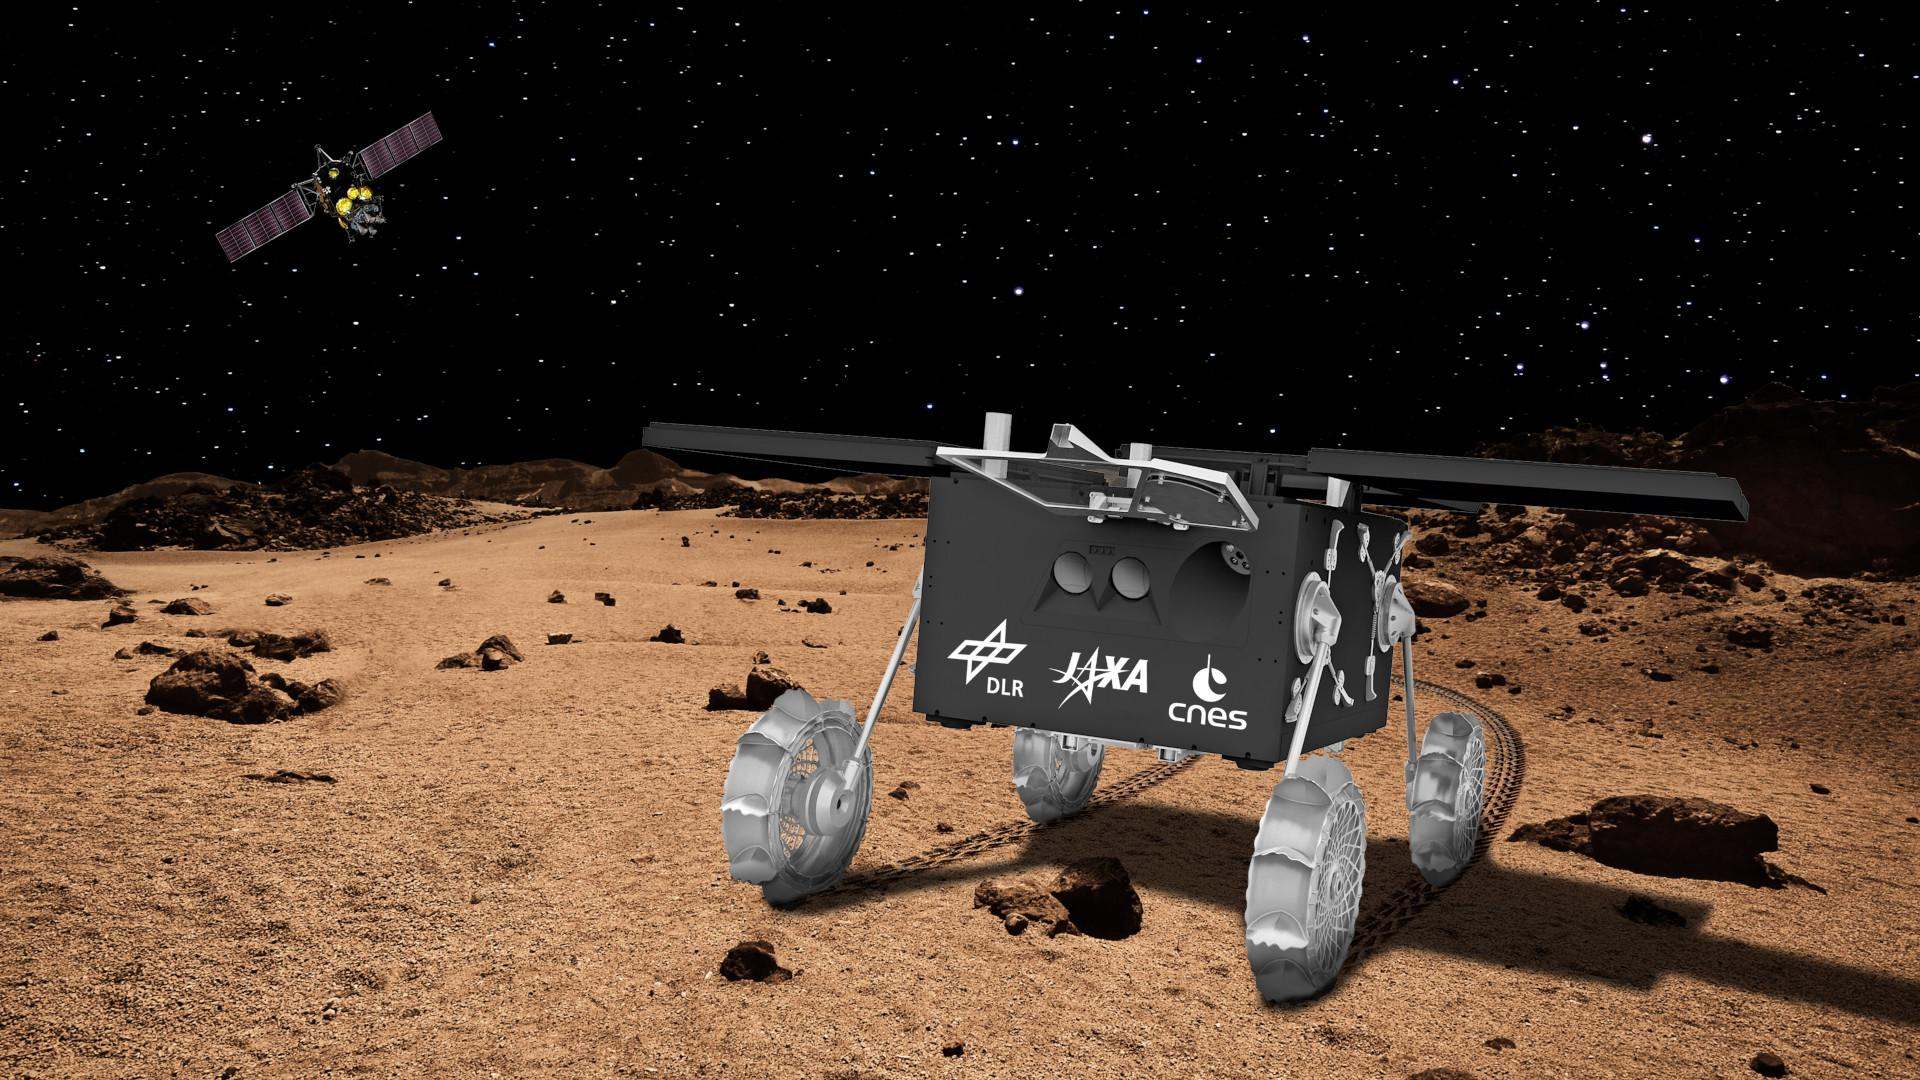 Künstlerische Darstellung des MMX-Rovers: Am Ziel angekommen: Nach dem Ausklinken durch das Mutterschiff (im Hintergrund) und dem Fall zur Phobos-Oberfläche hat sich der MMX-Rover selbstständig aufgerichtet und mit Energie versorgt. Nun ist er bereit für die Erkundung des Marsmondes.